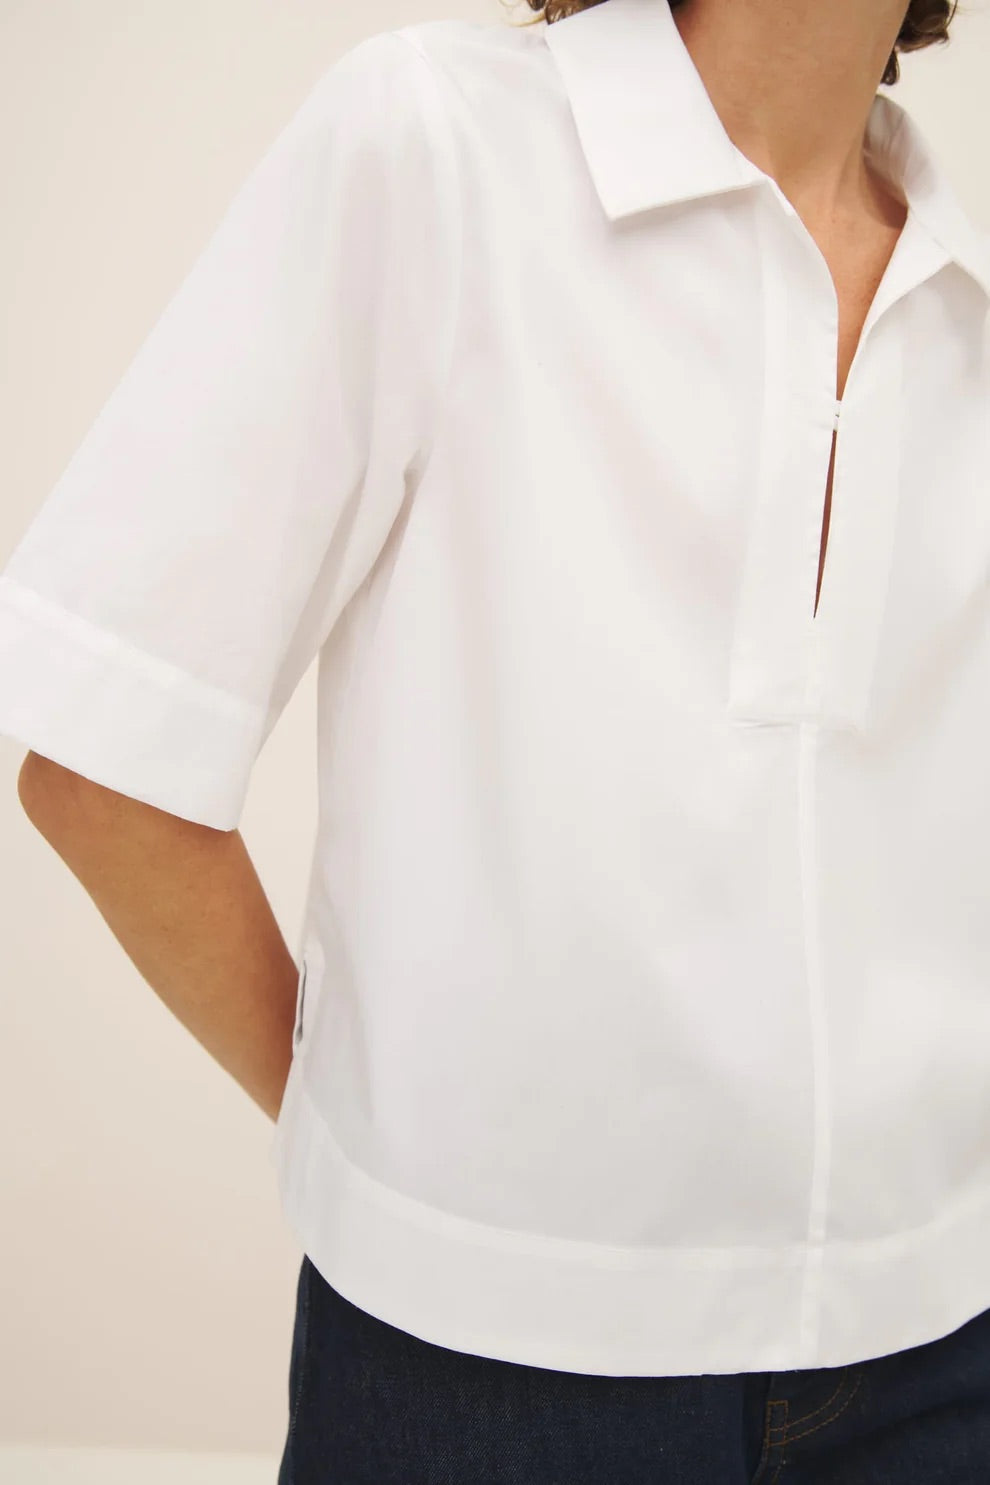 Kowtow Horizon Shirt White